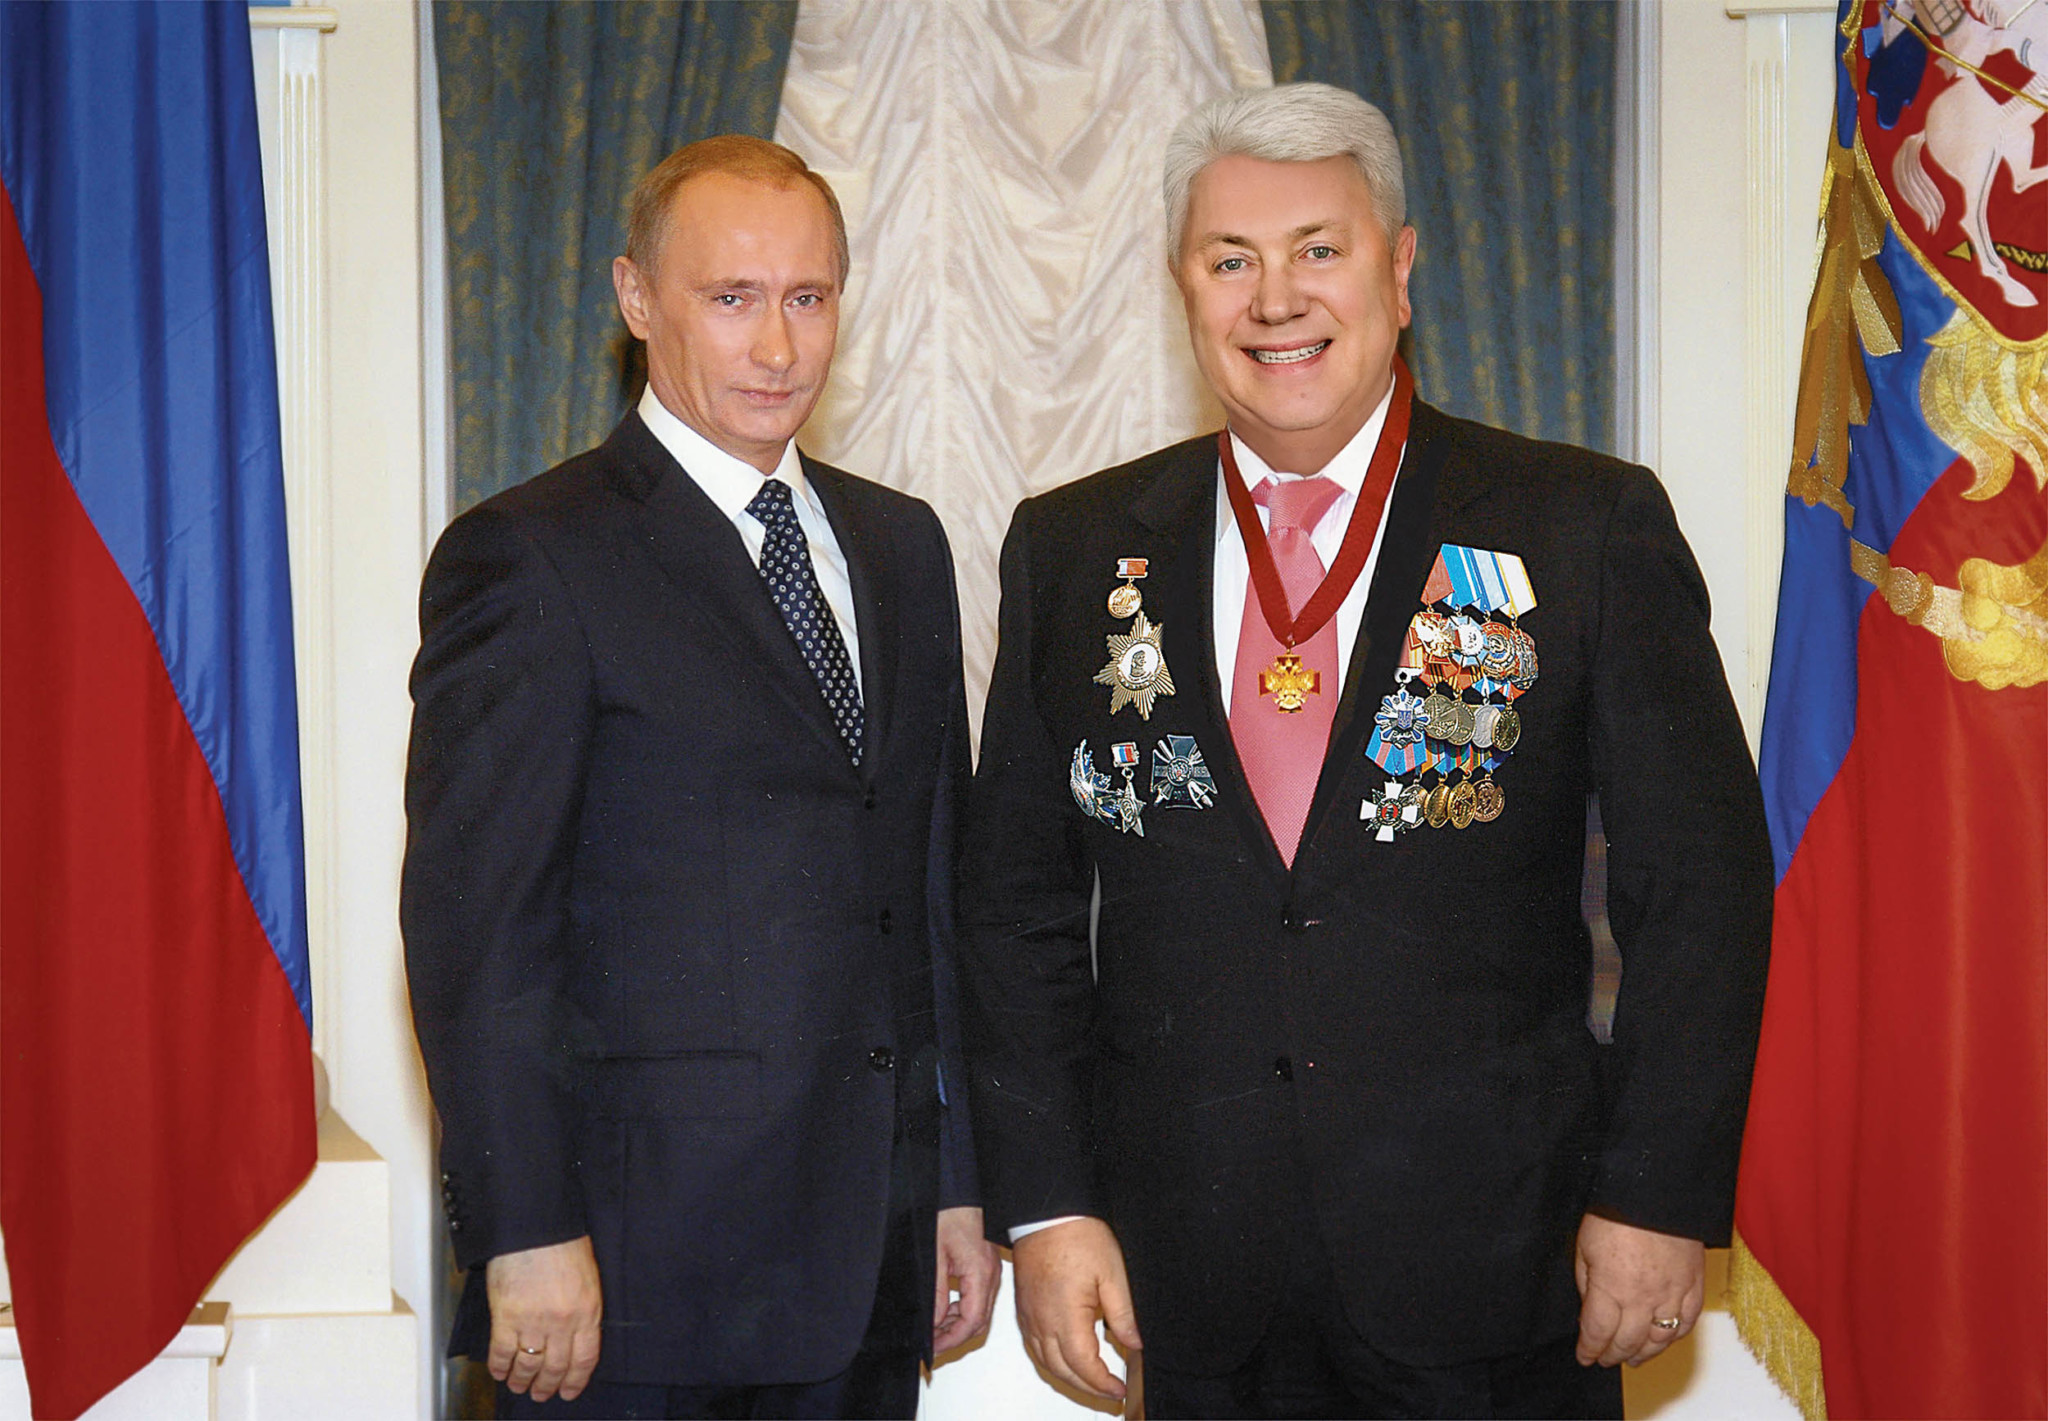 Газманов в орденах и медалях фото